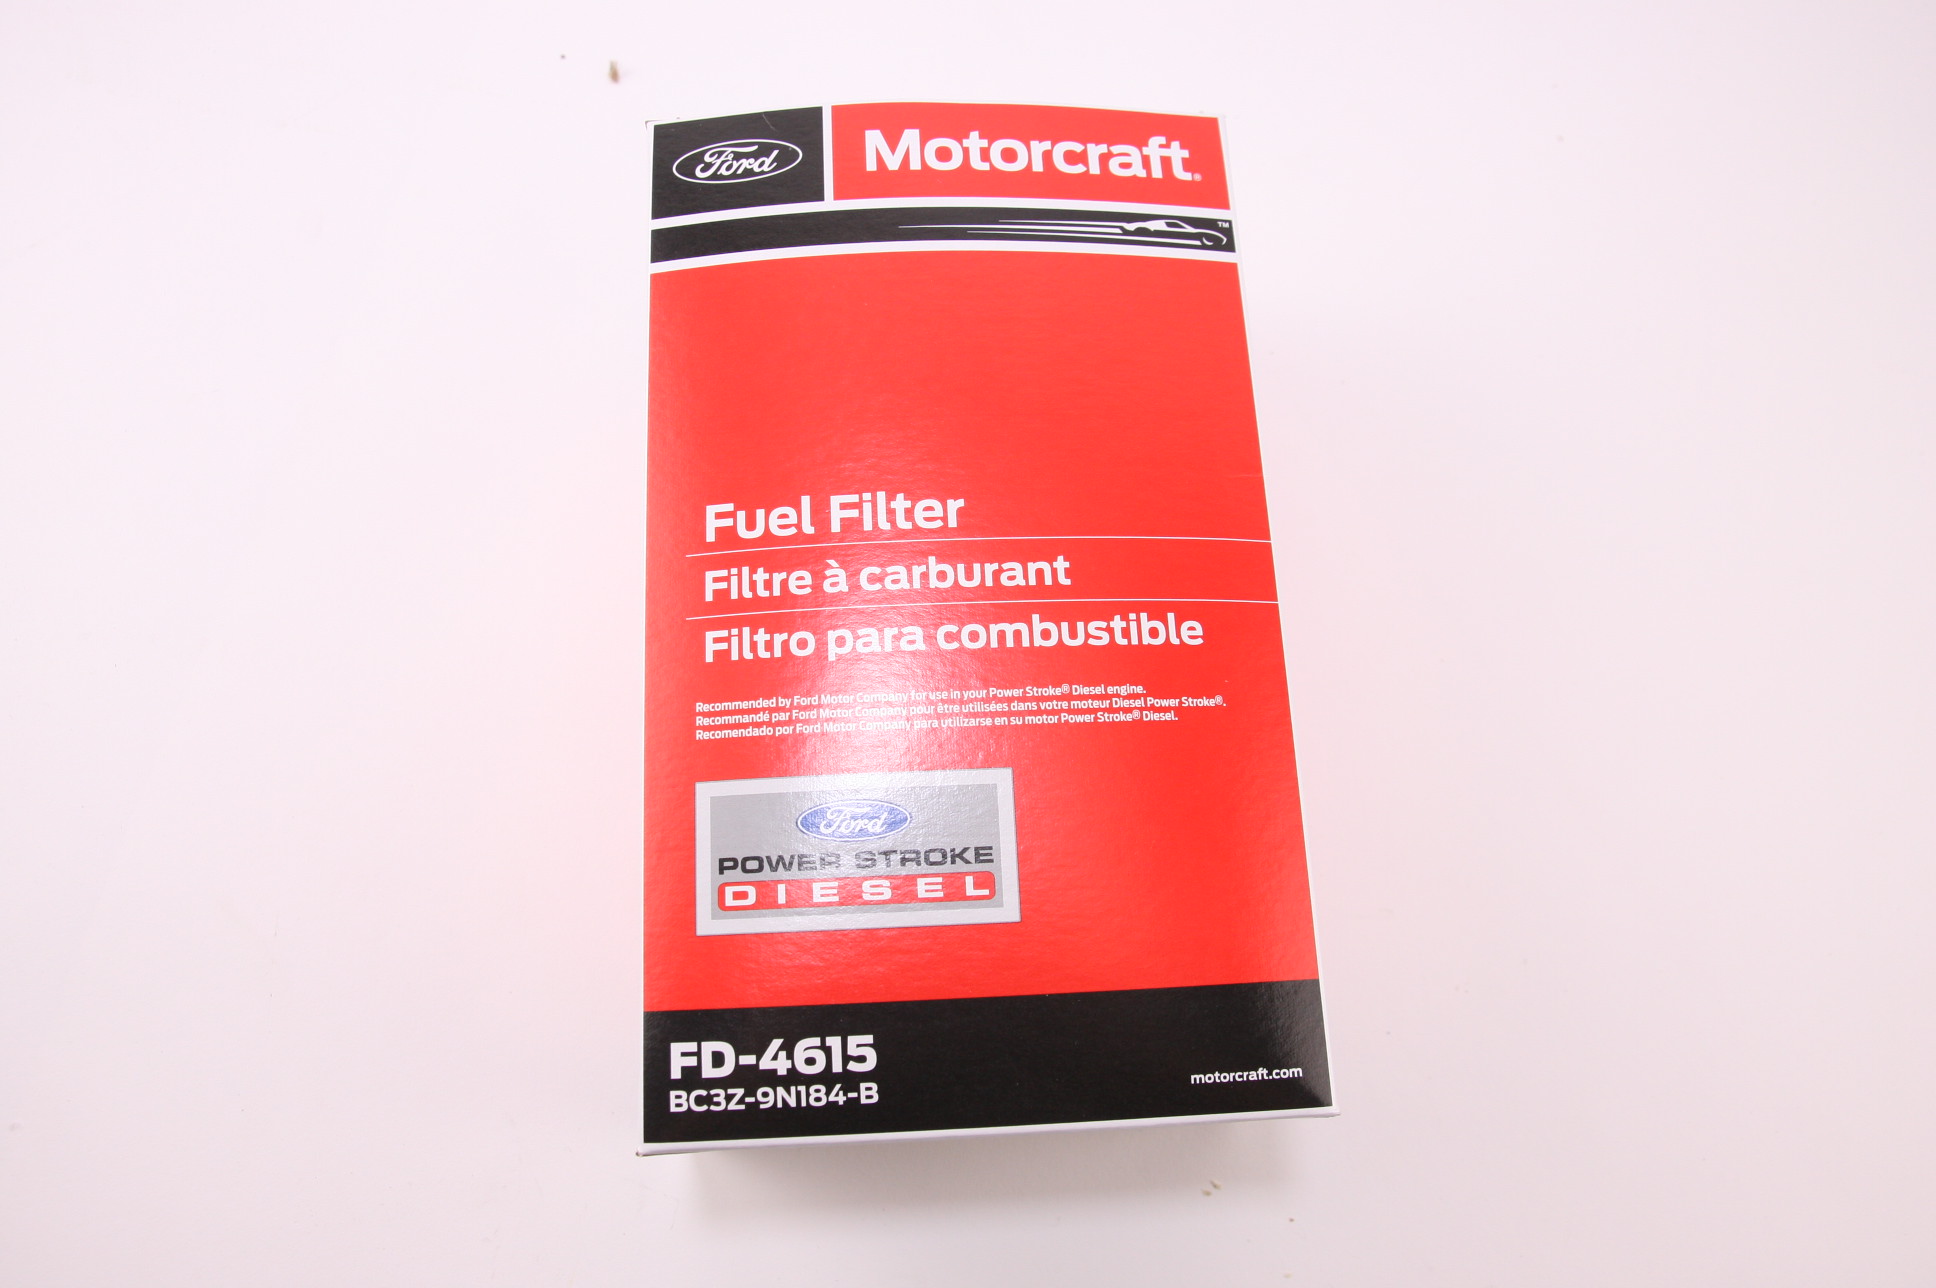 New Ford Motorcraft FD-4615 Fuel Filter 11-13 6.7L DIESEL F250 F350 F450 F550 - image 3